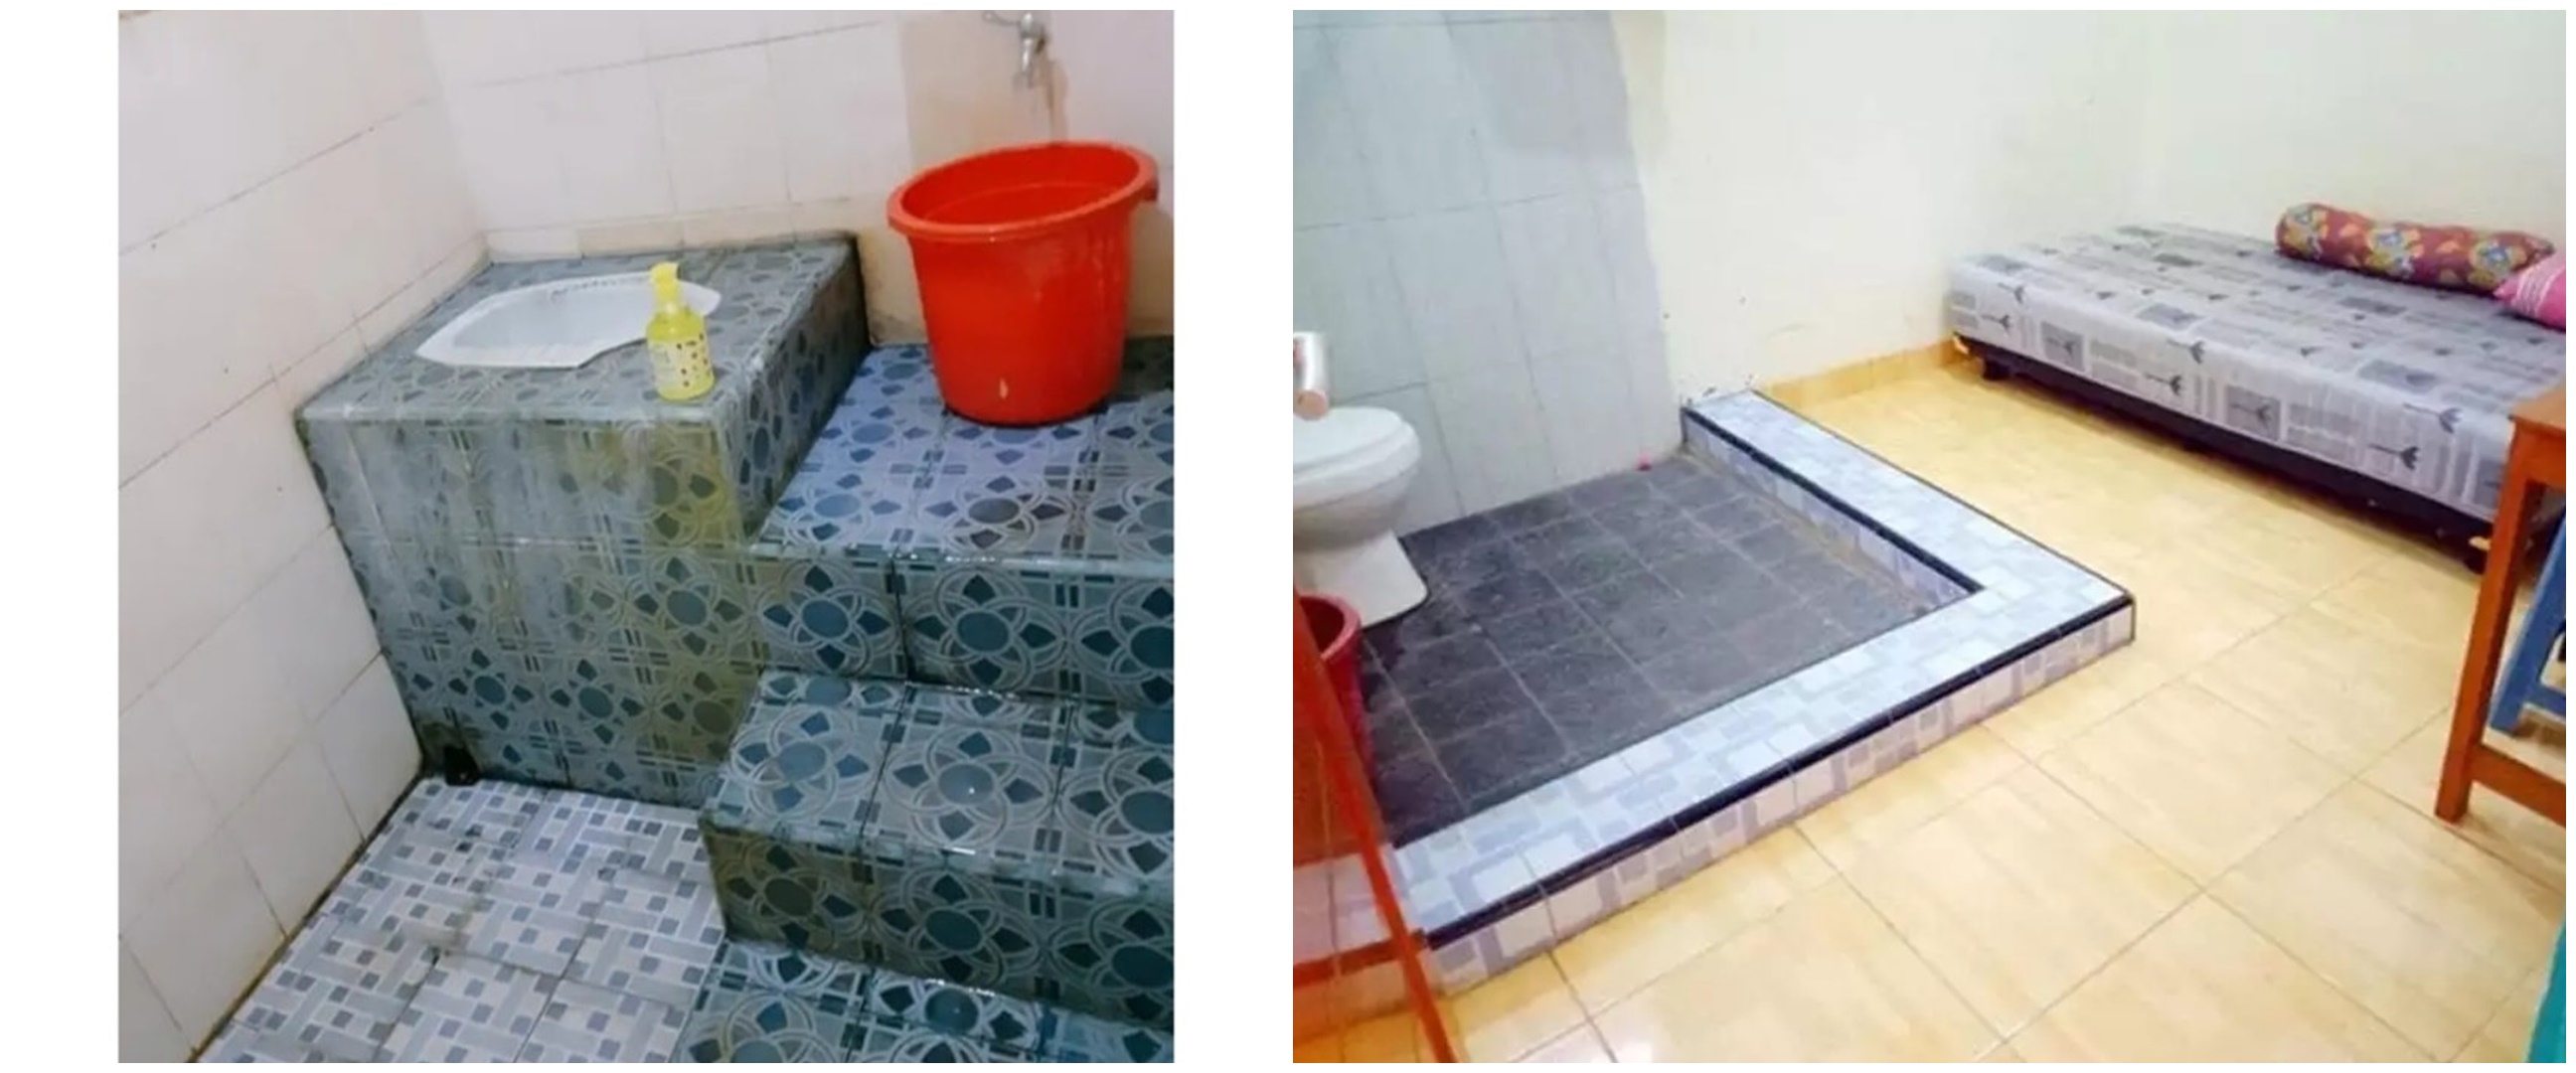 11 Potret kocak desain nyeleneh kamar mandi ini bikin bingung orang yang mau buang hajat